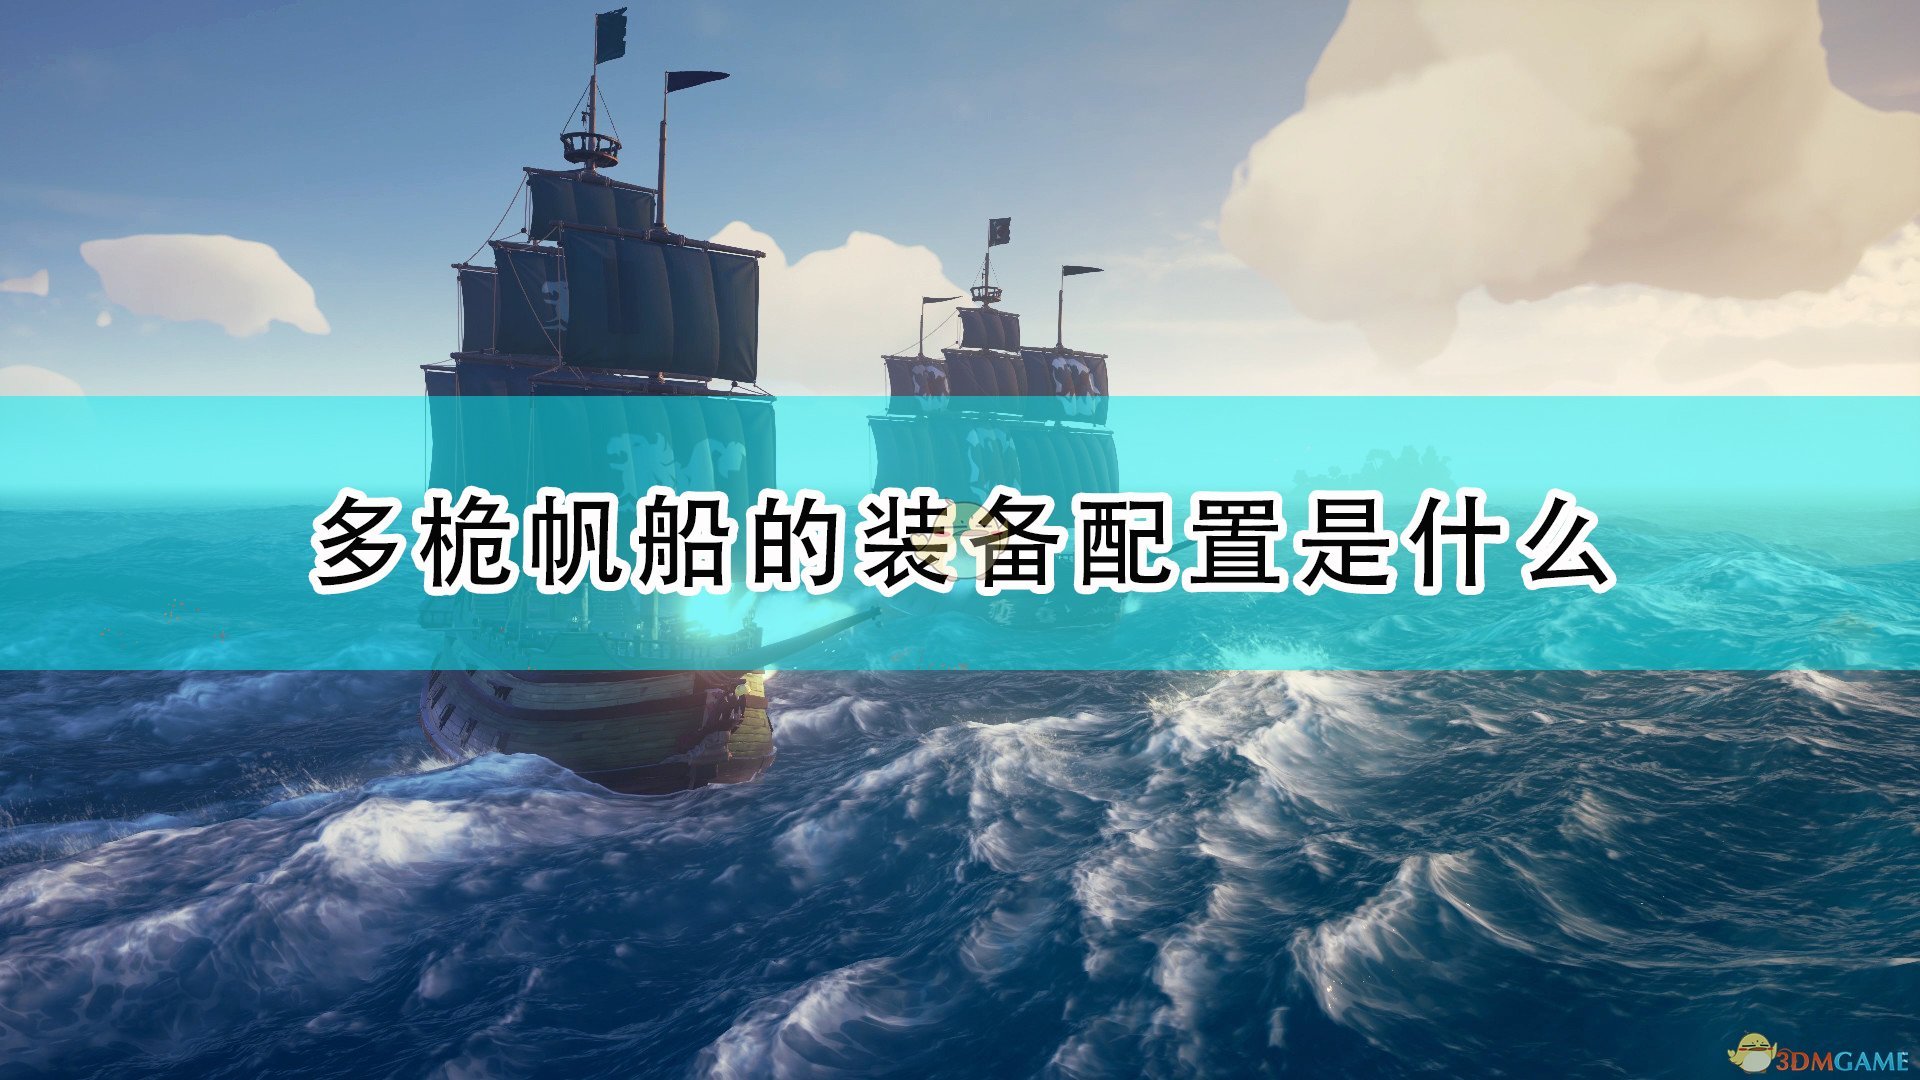 《盗贼之海》多桅帆船装备配置及物资介绍